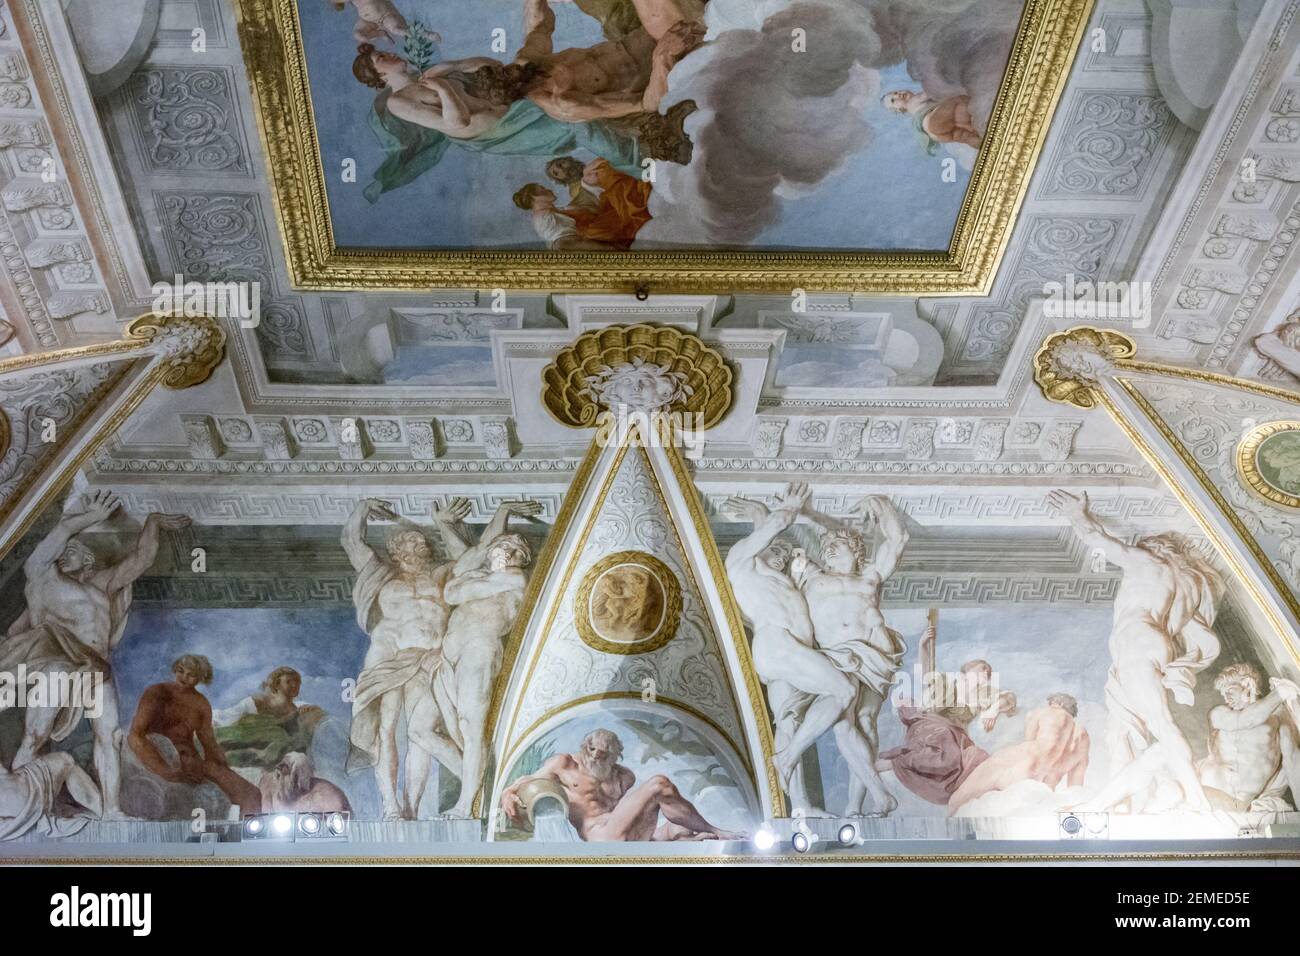 Rome, Italie - 05 octobre 2018 : peinture sur le plafond de la galerie Borghèse, Rome Banque D'Images